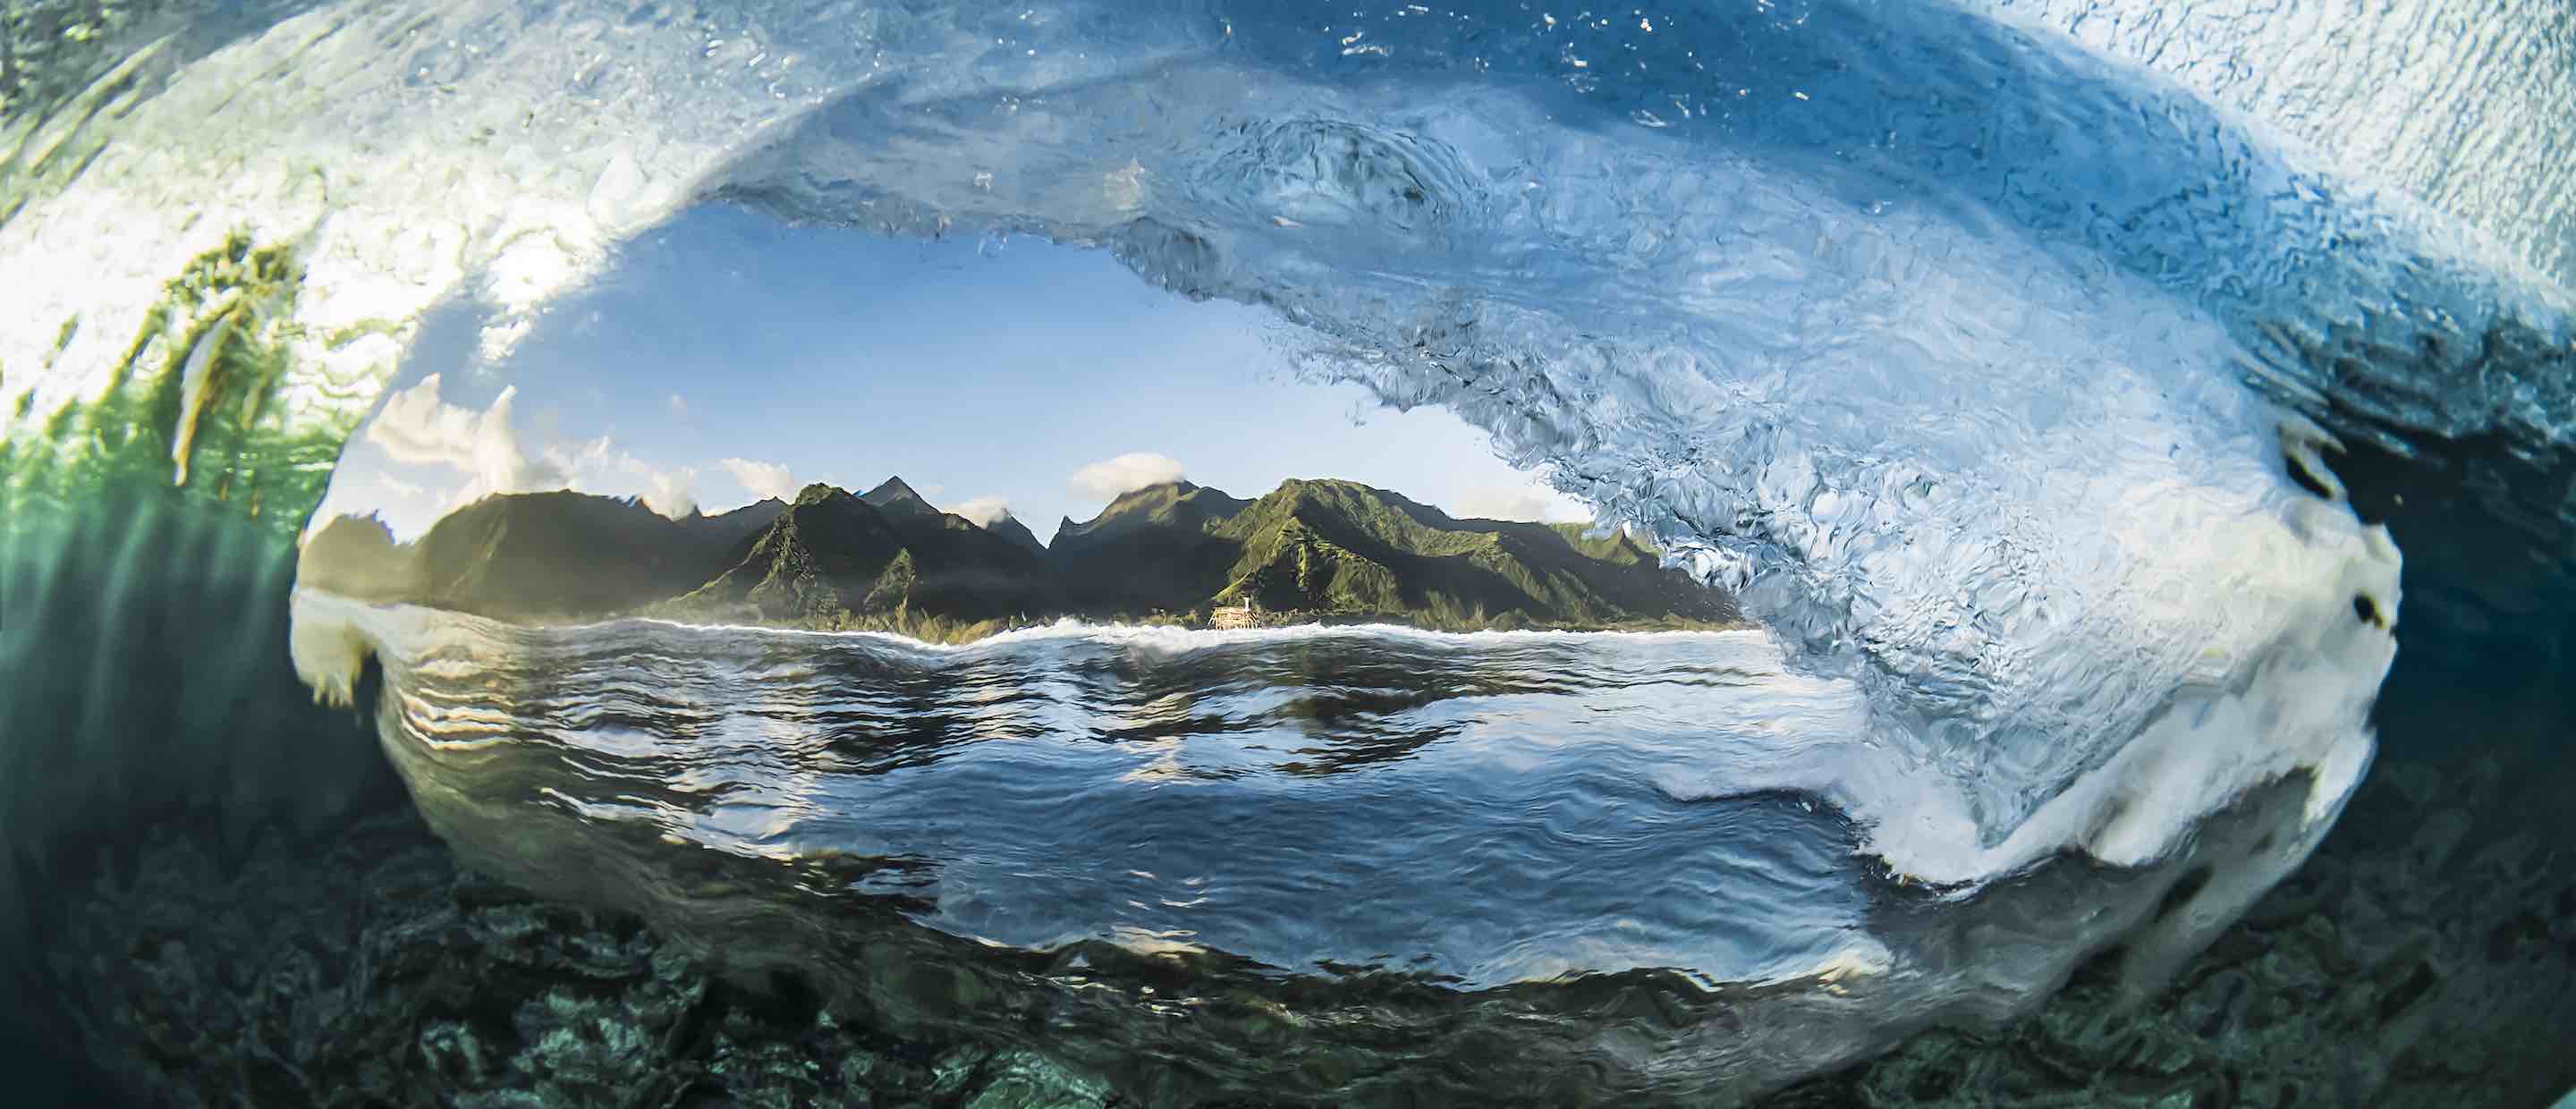 Teahupoo-Bubble-2-August-2017-Tahiti-Ben-Thouard.jpg